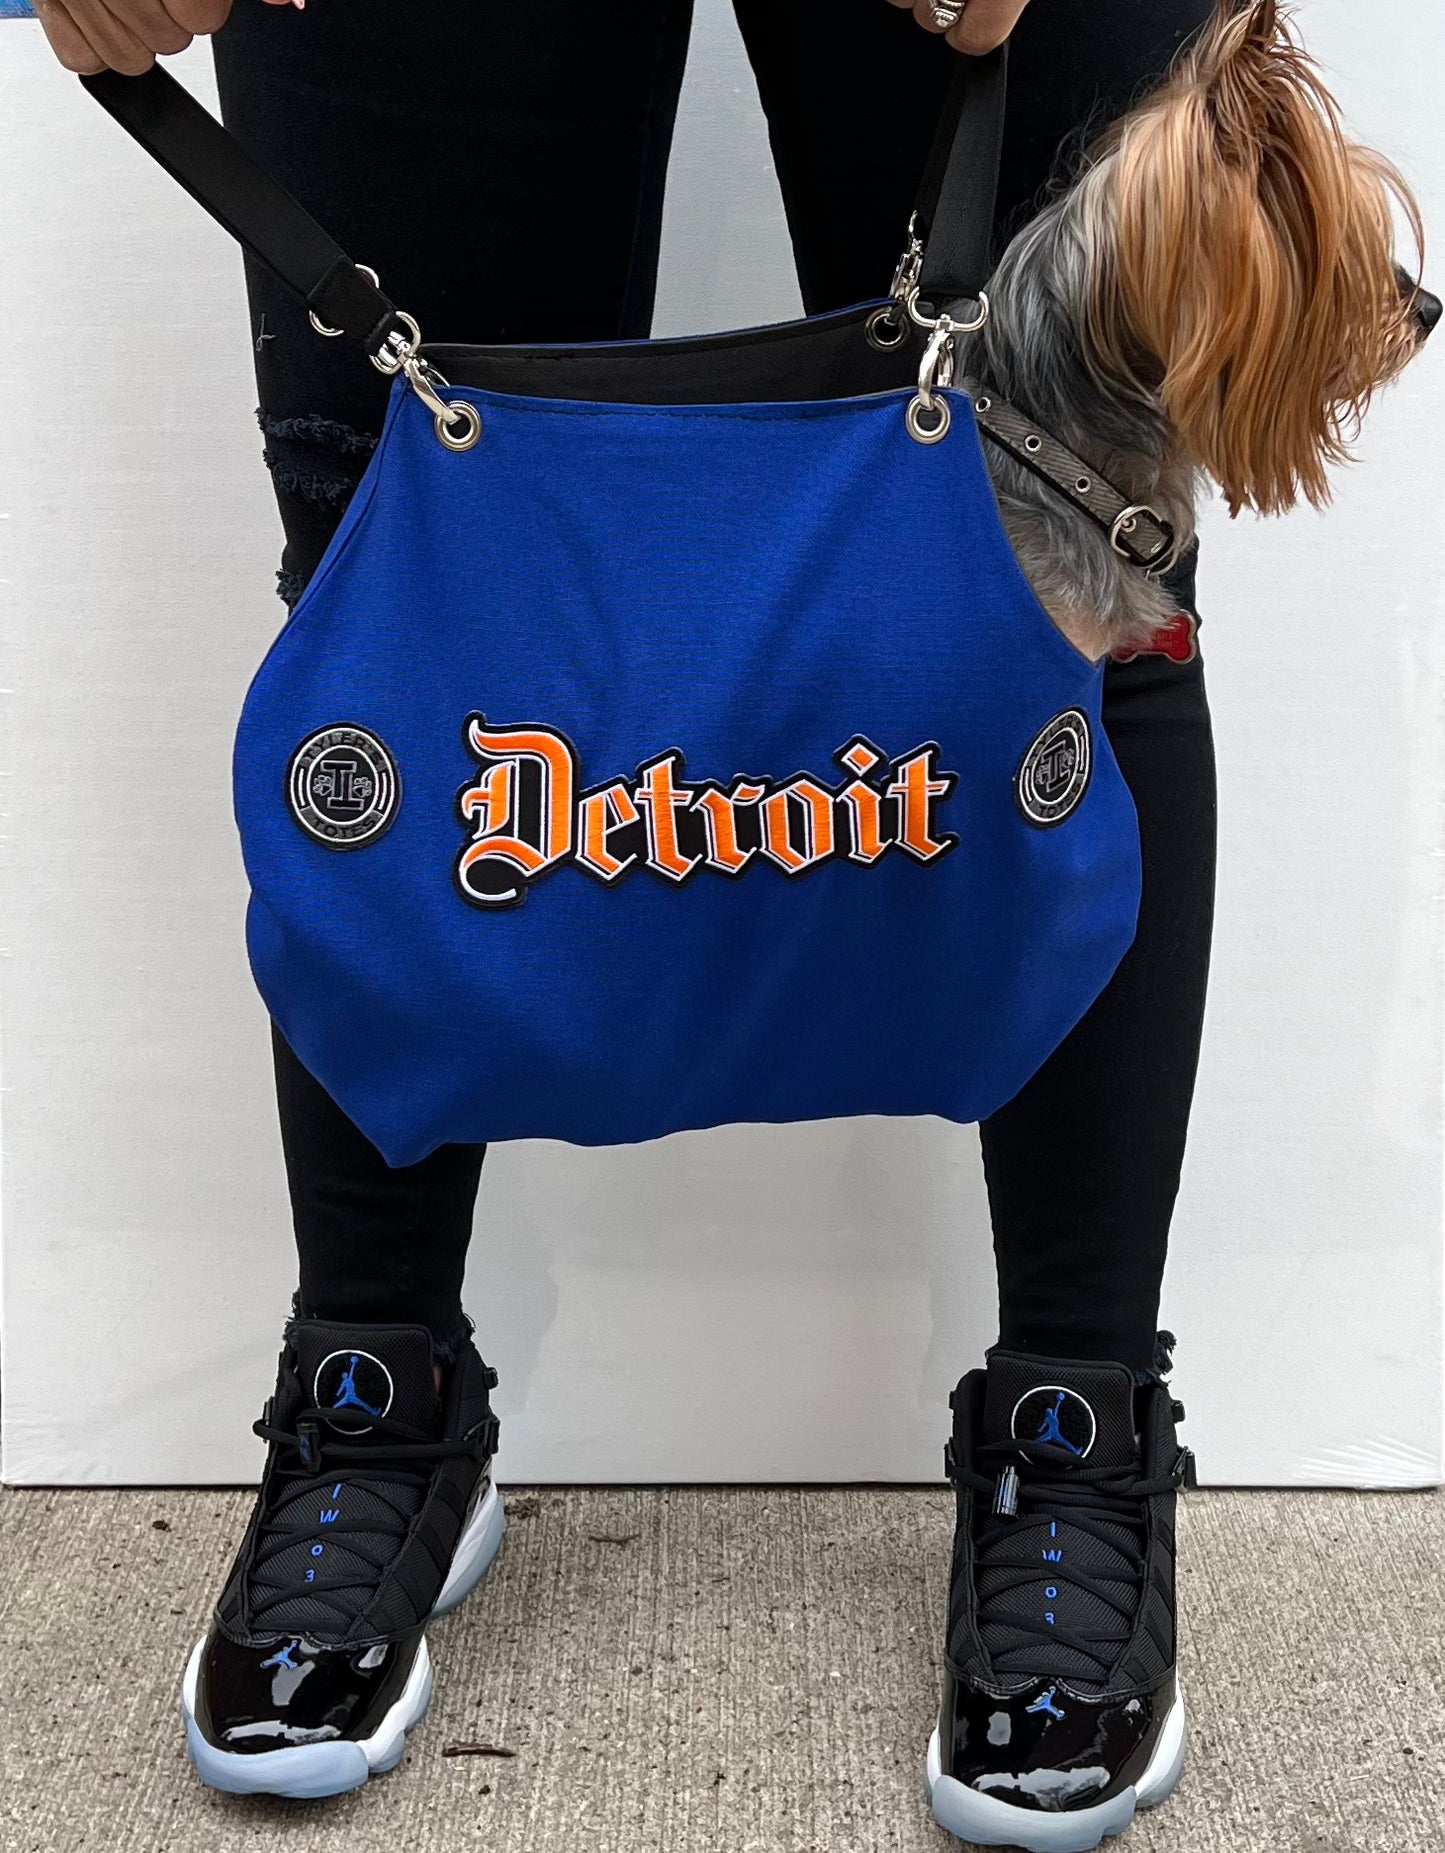 Detroit Cut Out Tote Bag